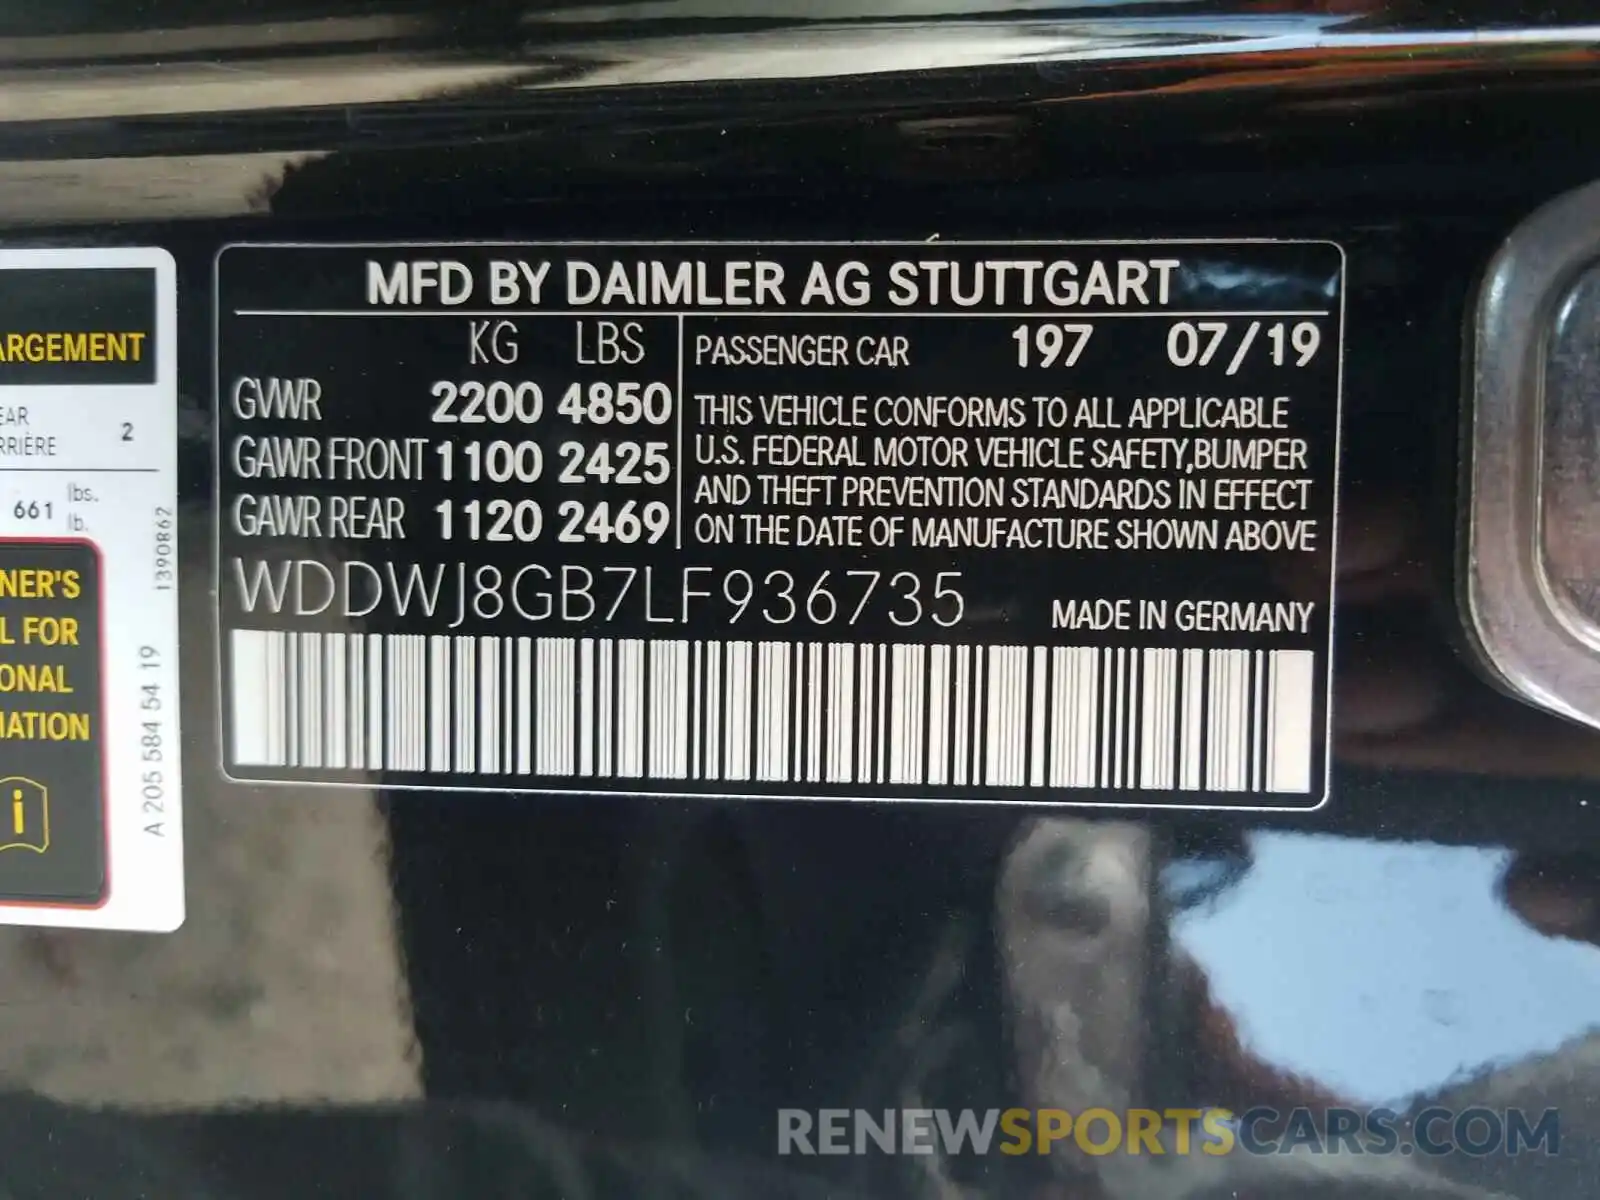 10 Photograph of a damaged car WDDWJ8GB7LF936735 MERCEDES-BENZ AMG 2020